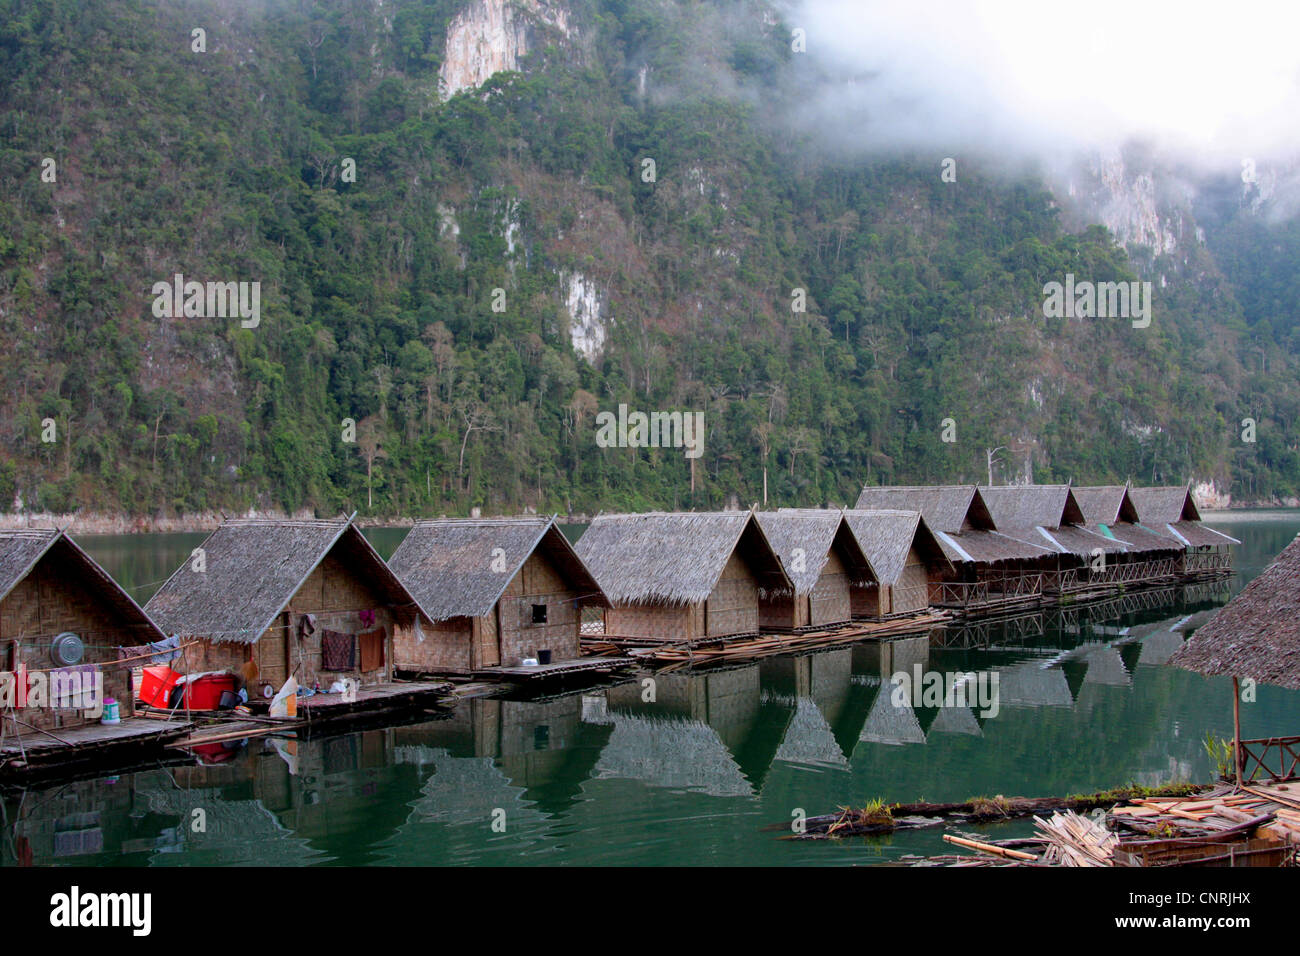 village of bamboo huts at Cheow Lan Lake, Thailand, Phuket, Khao Sok NP Stock Photo